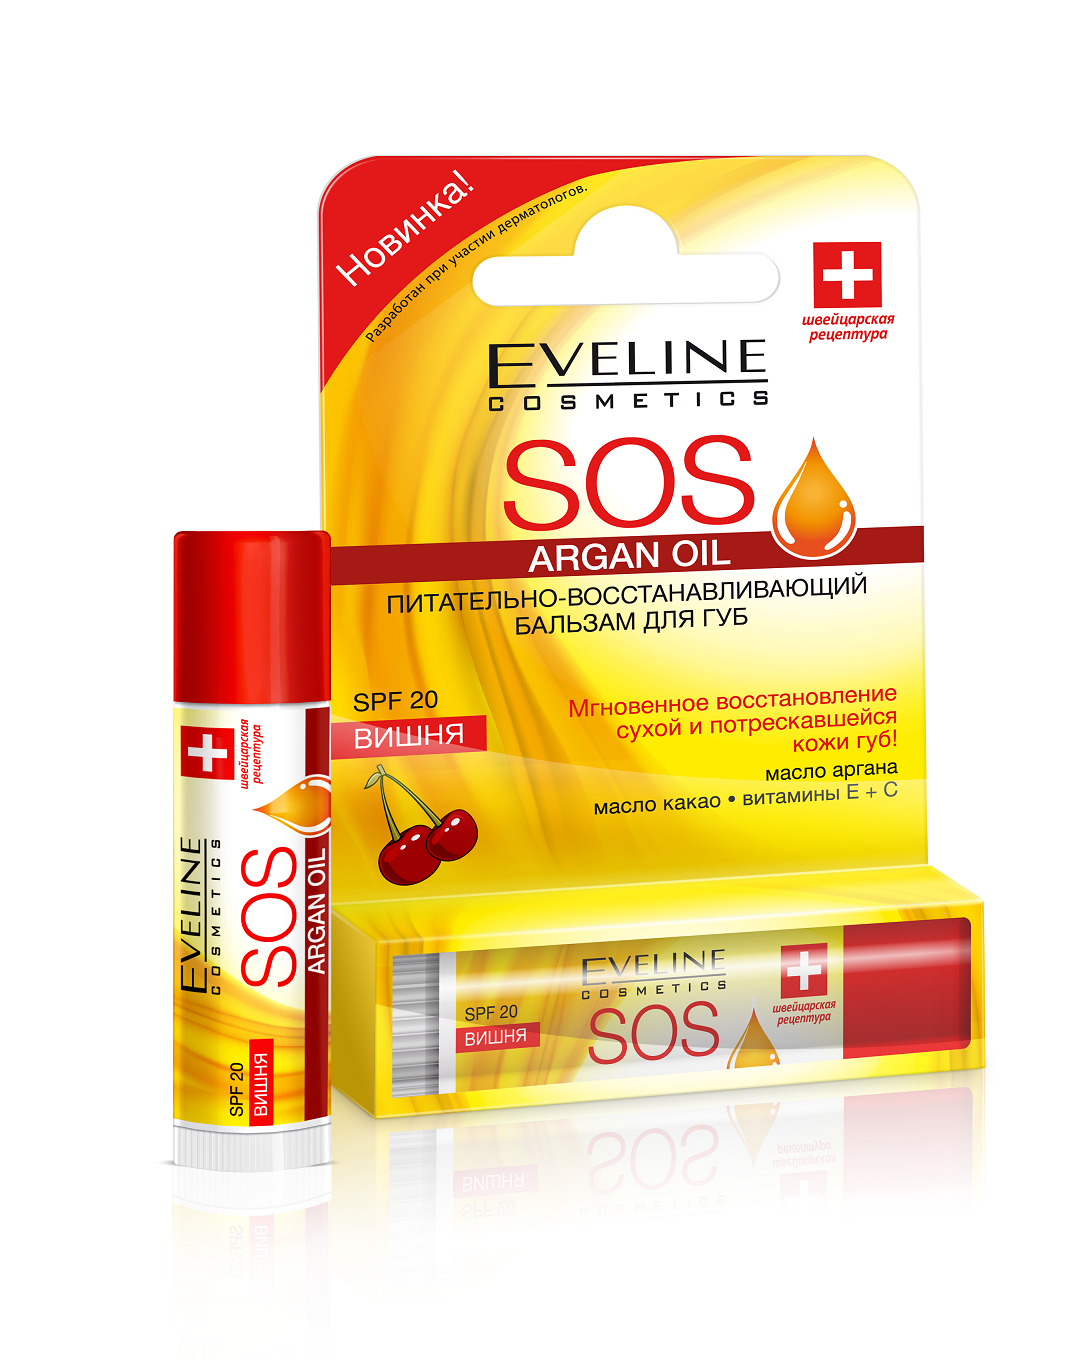 Eveline Питательно- восстанавливающий бальзам для губ - Вишня серии ARGAN OIL SOS